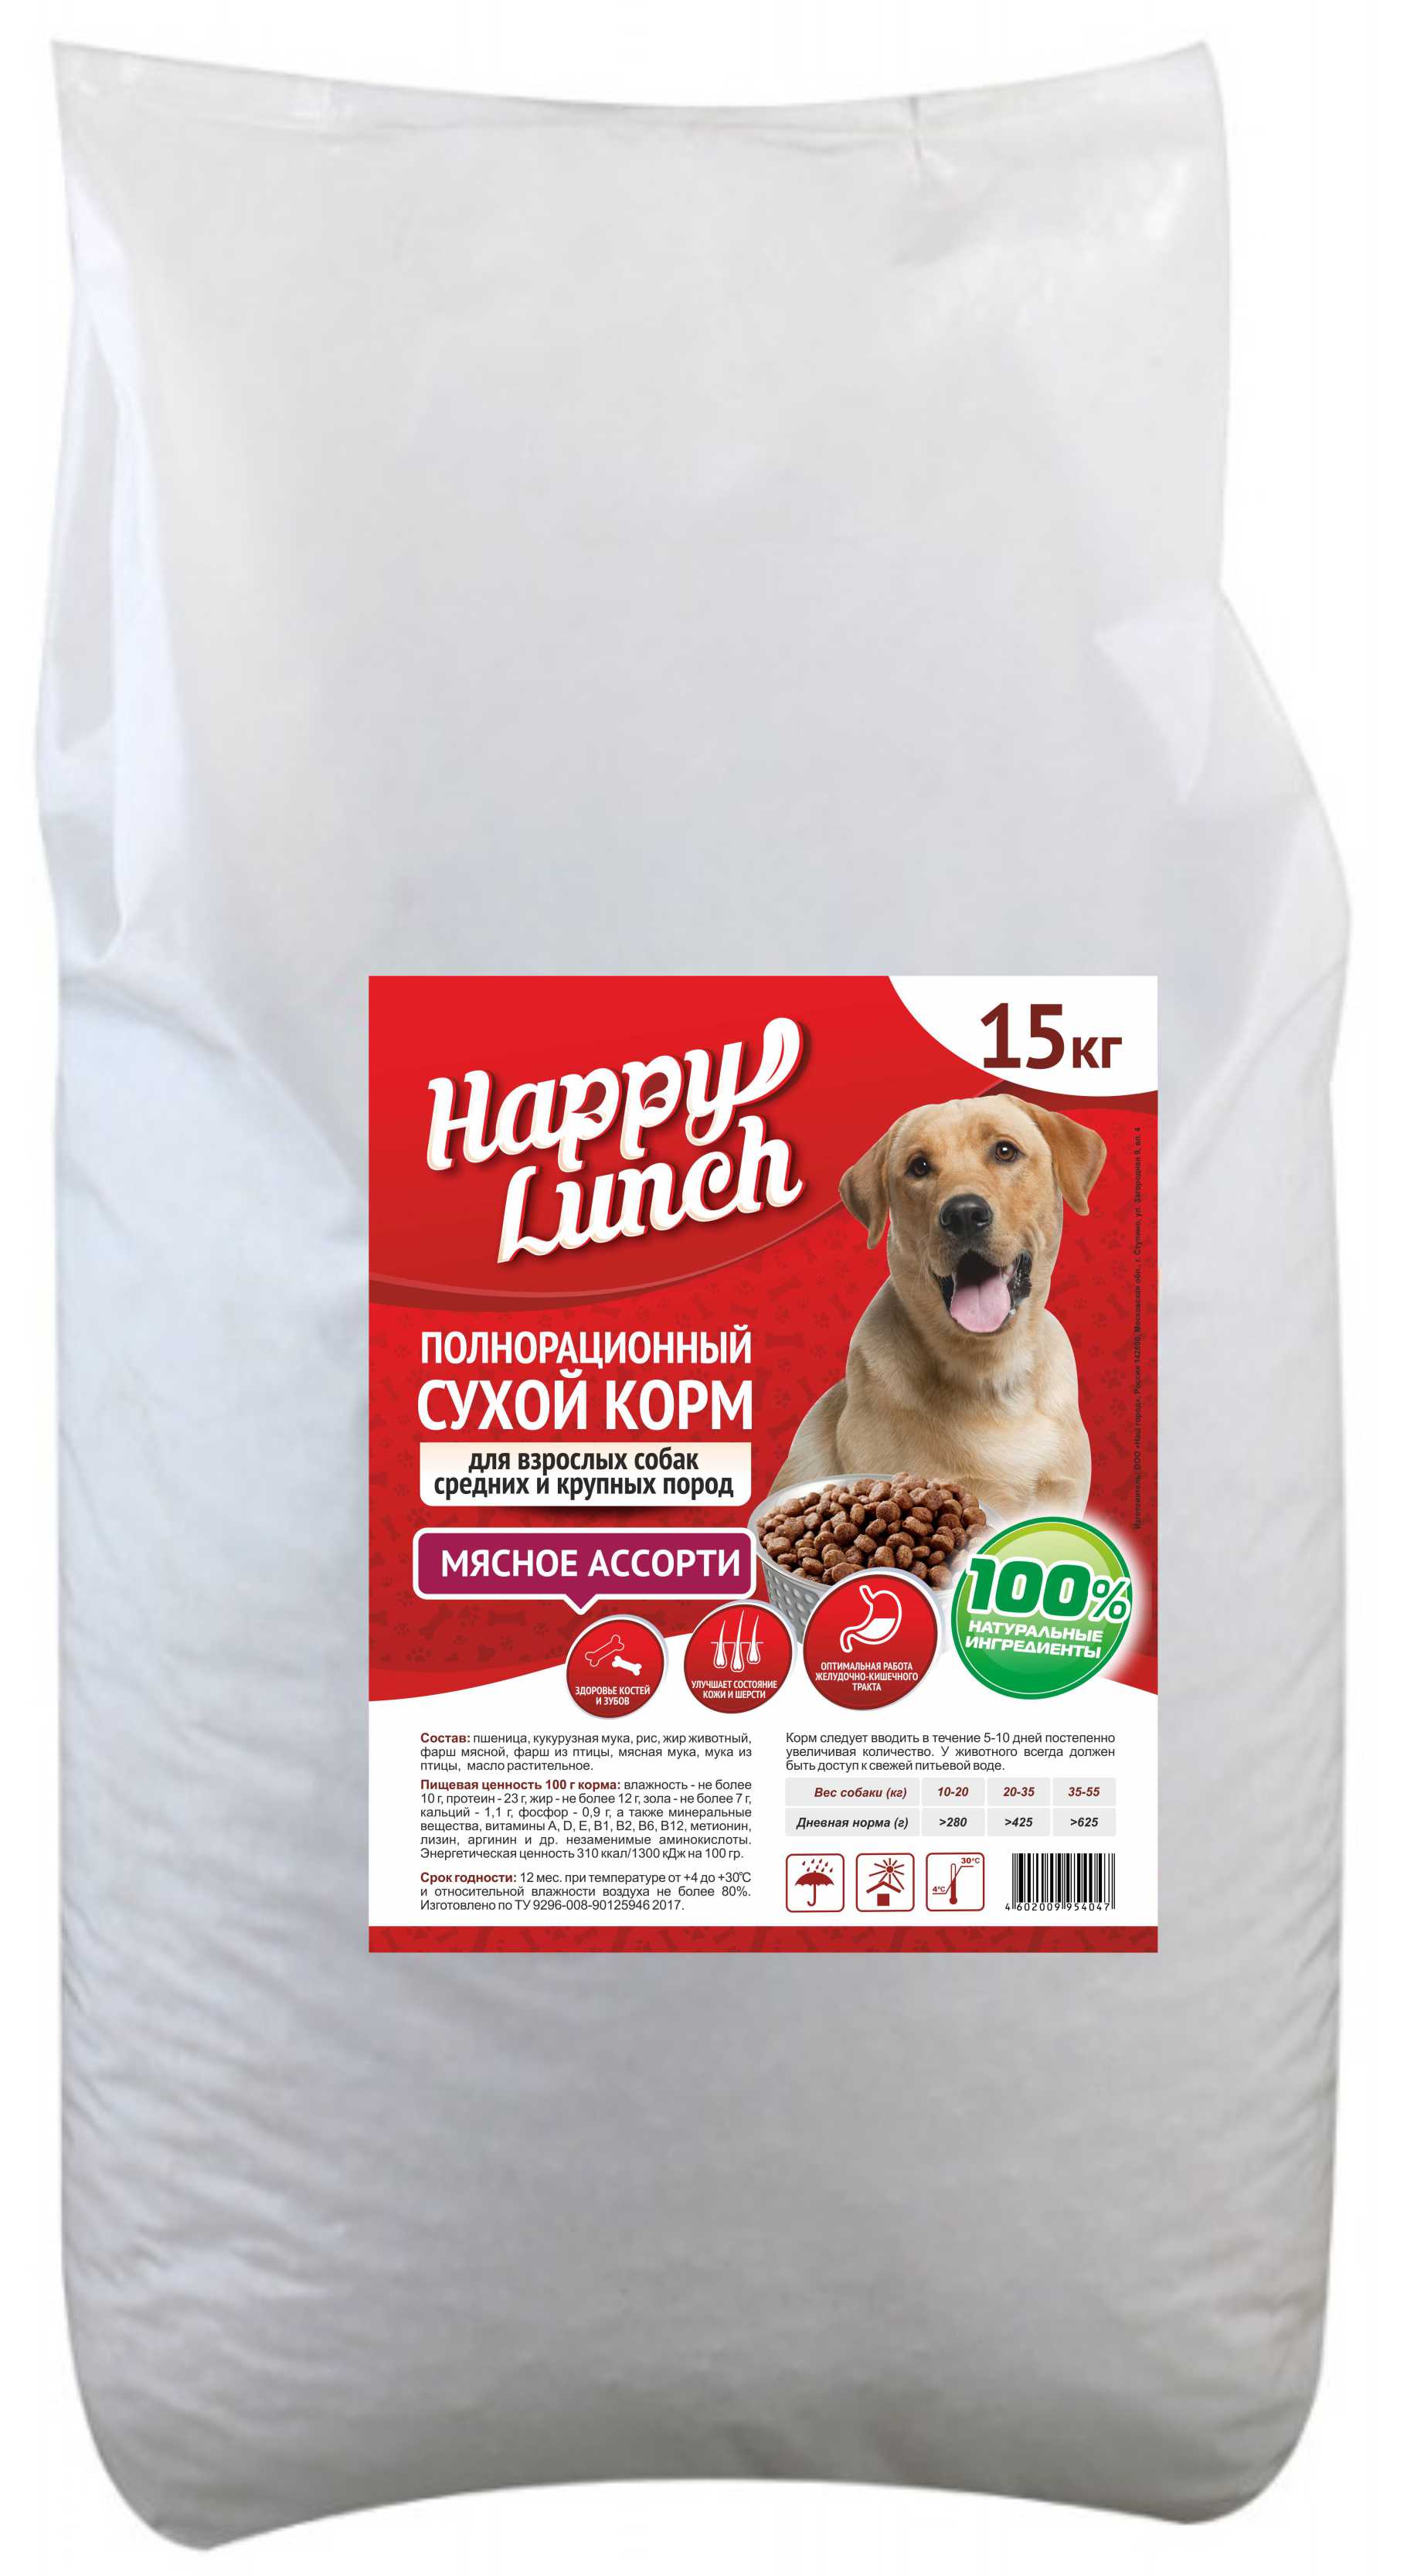 Happy Lunch сухой корм д/взрослых собак средних и крупных пород (мясное ассорти) 15 кг 1